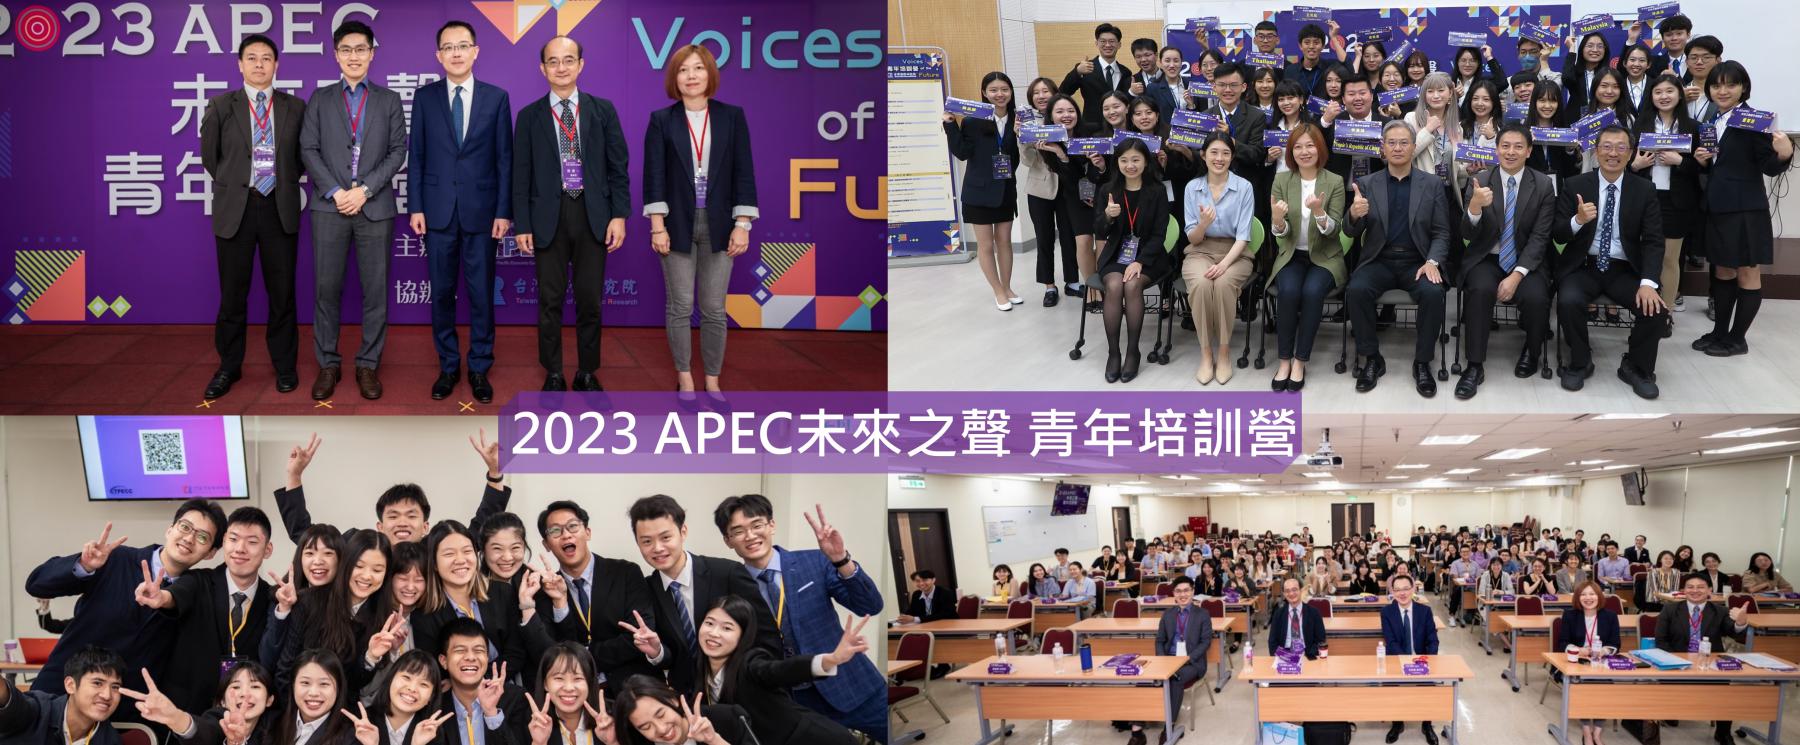 2023 APEC未來之聲青年培訓營花絮影片大公開